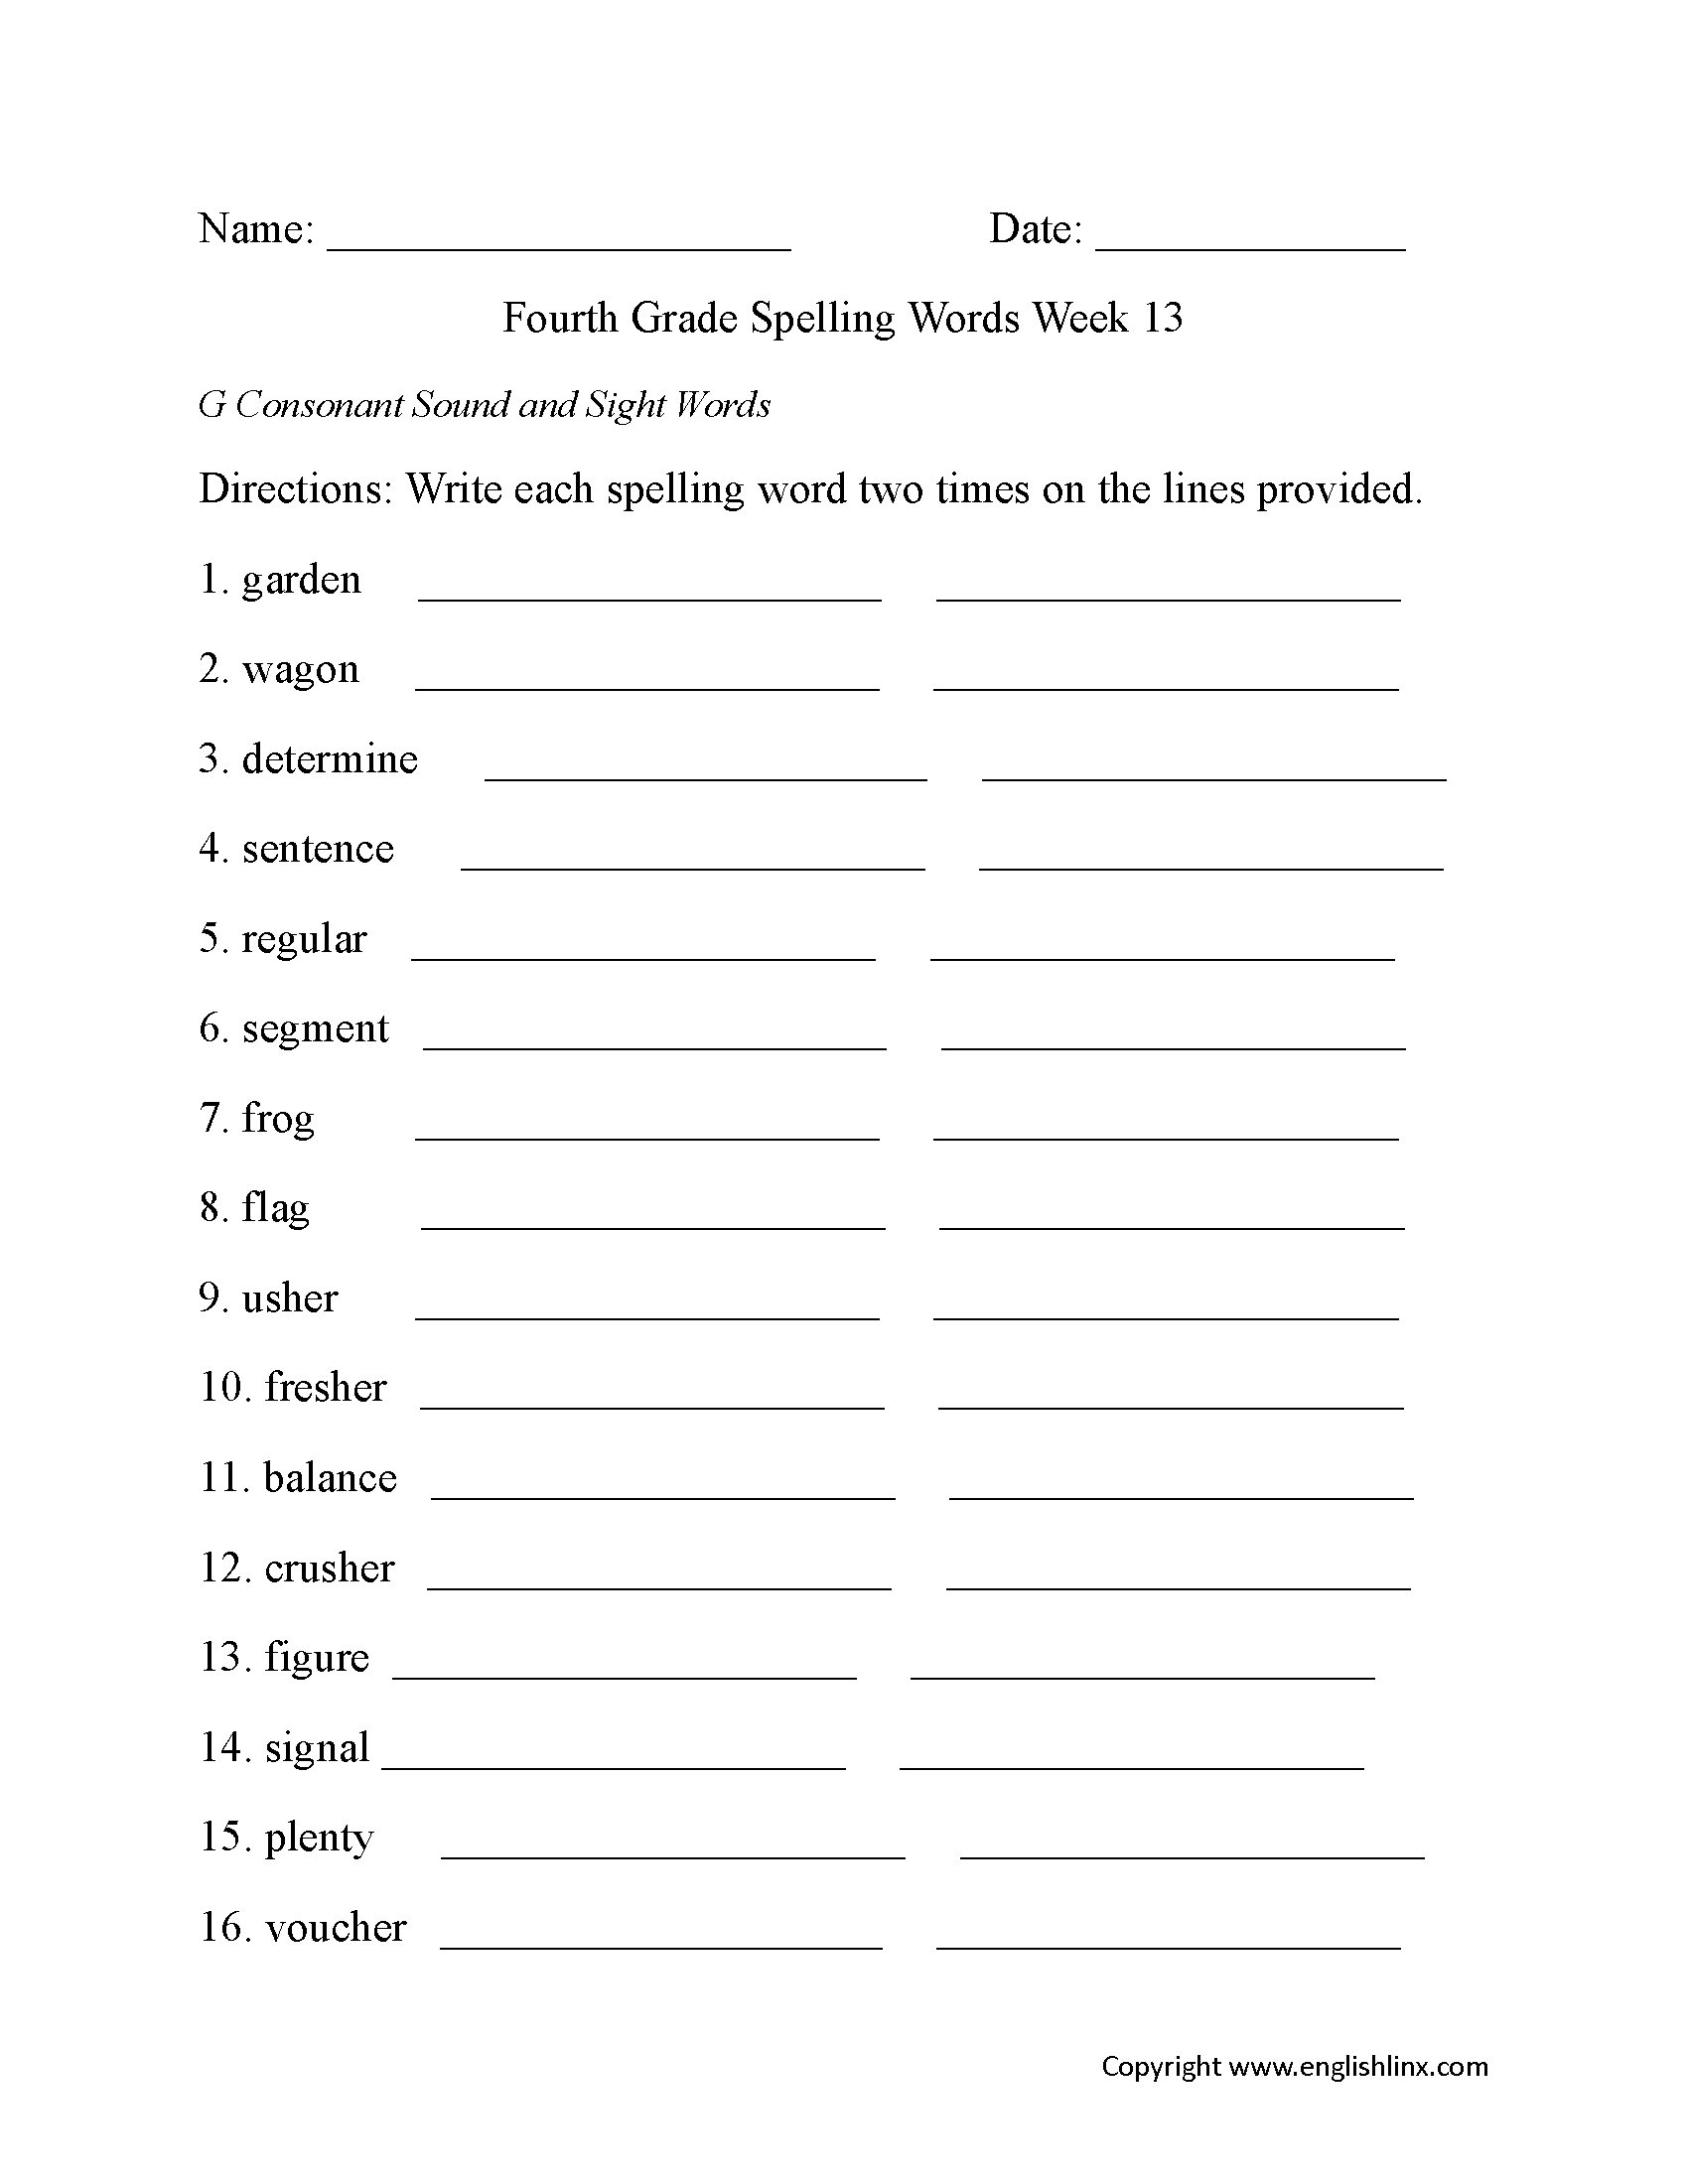 Worksheet. Free Spelling Worksheet Generator. Worksheet Fun - Free Printable Spelling Worksheet Generator